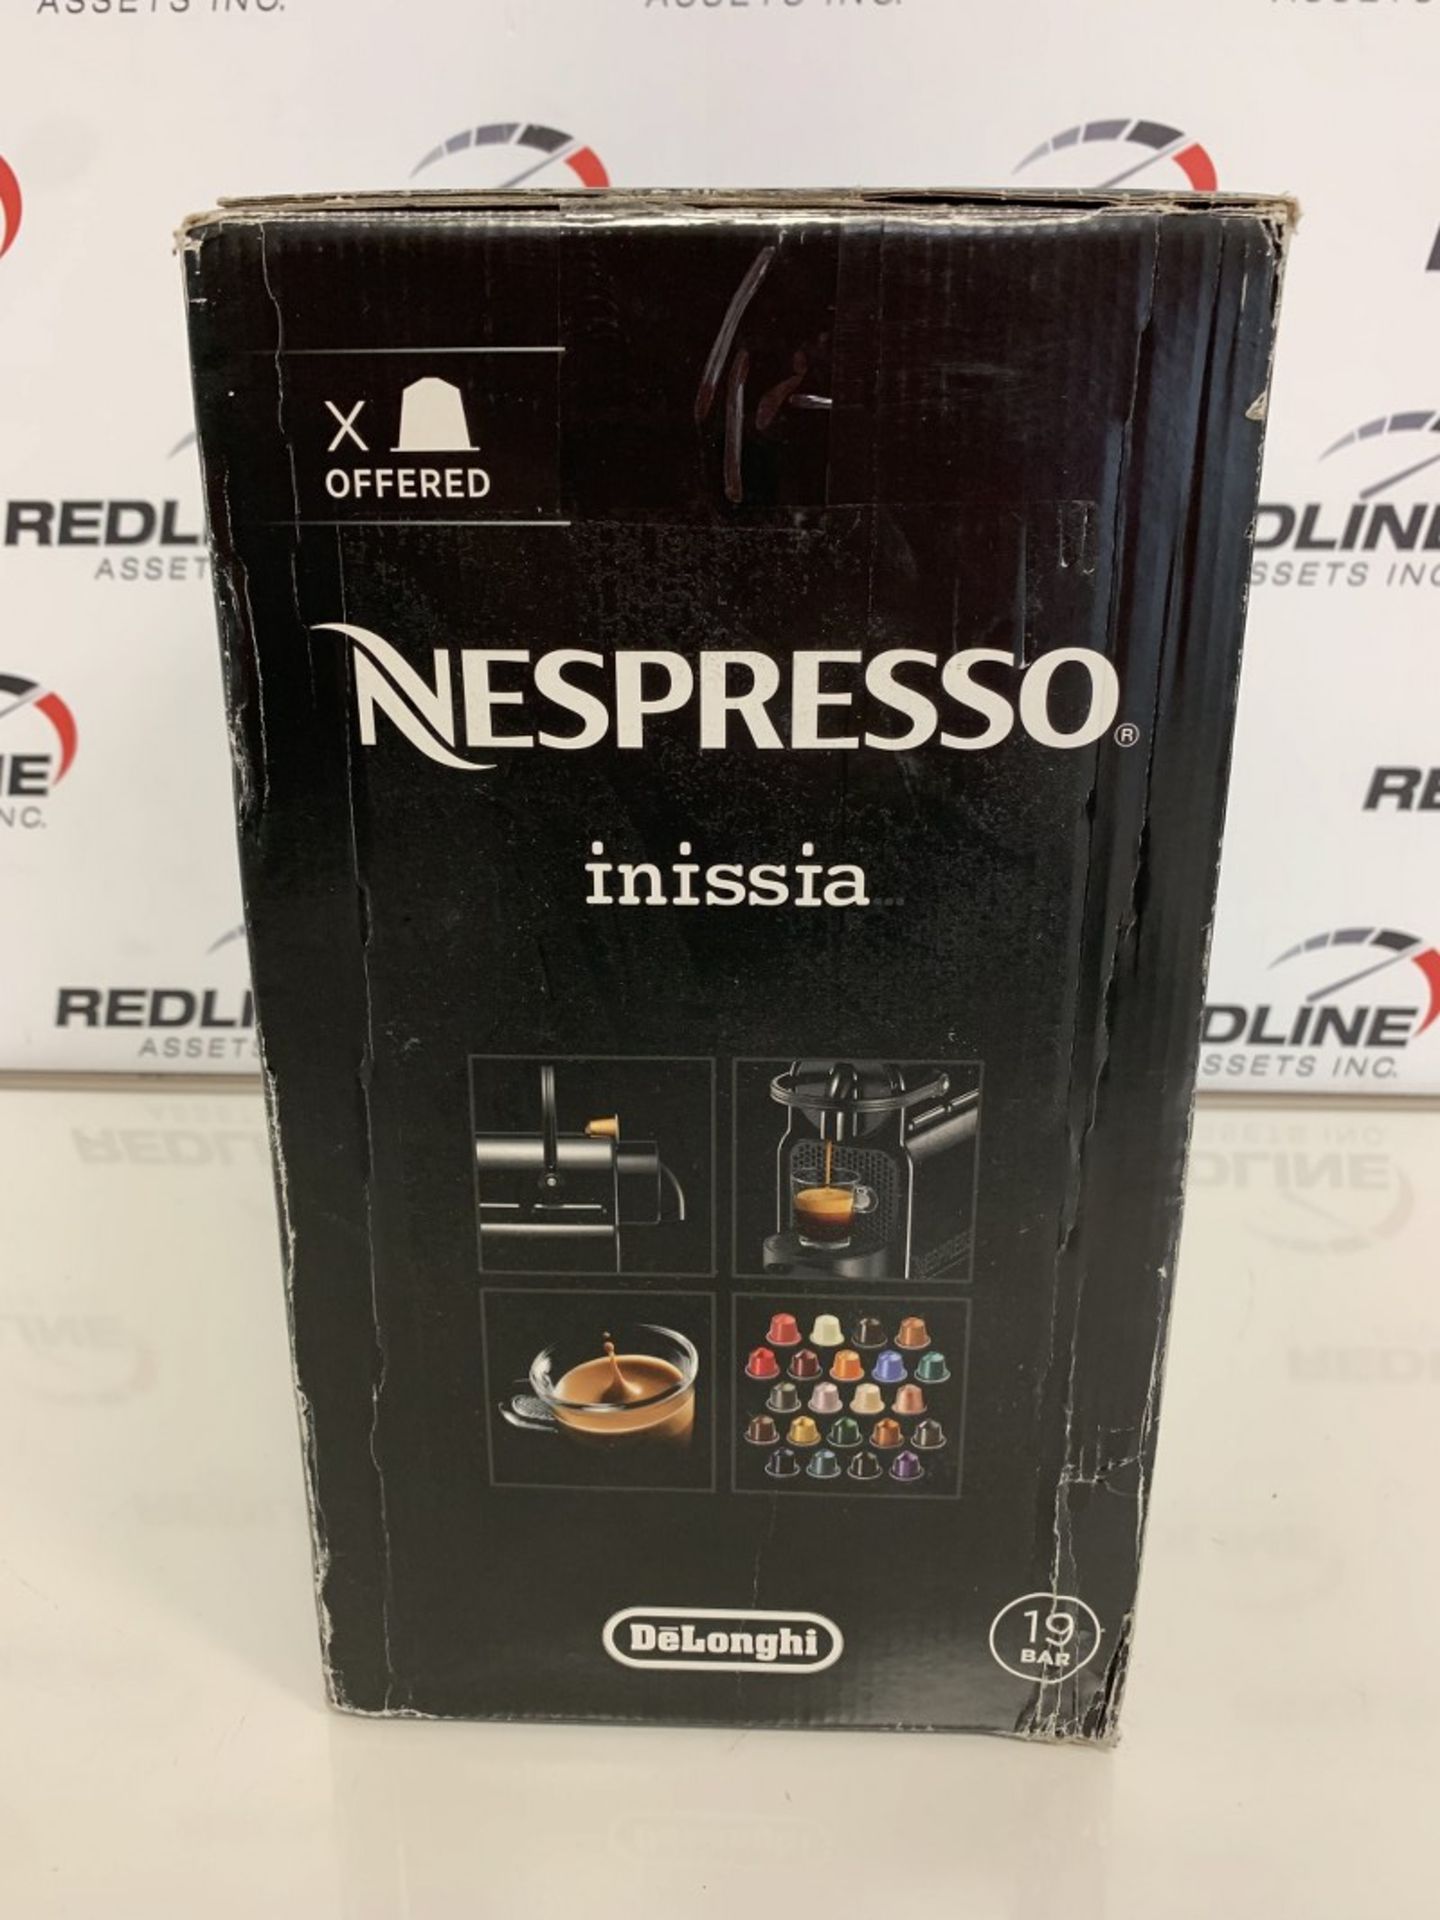 Delonghi - Nespresso - Inissia - Coffee Machine - Image 2 of 2